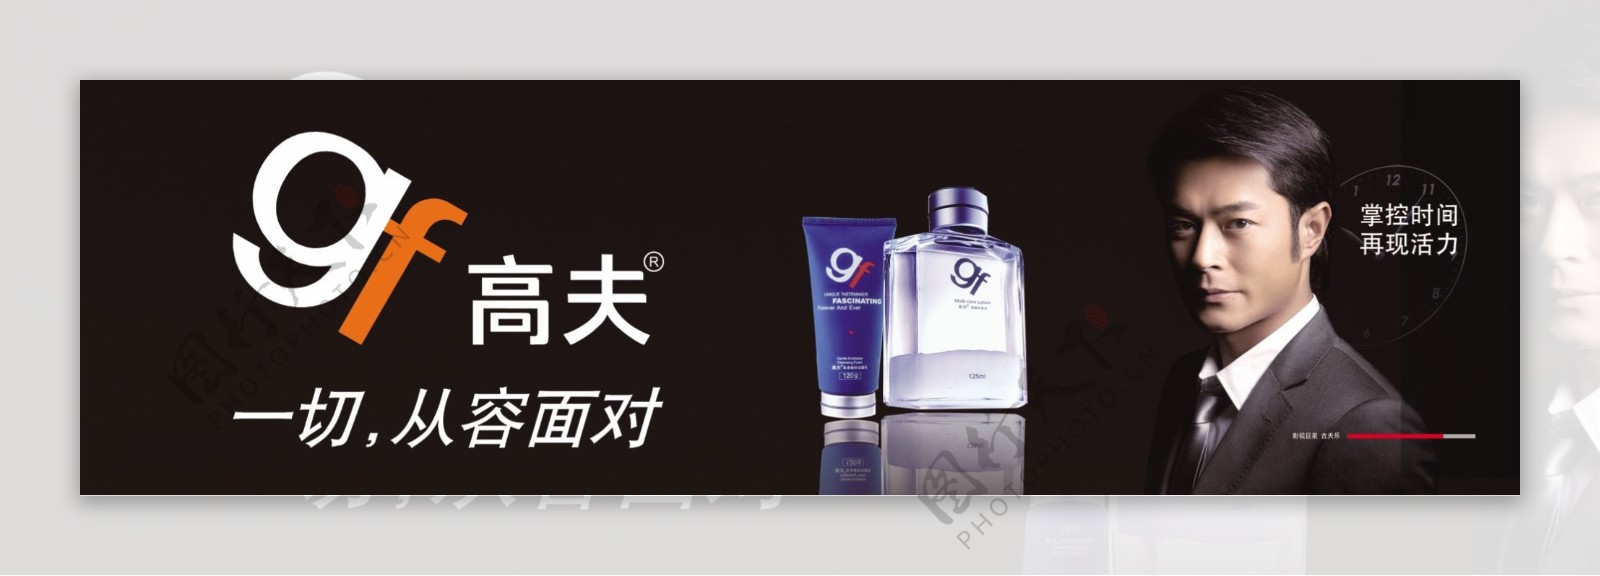 高夫logo古天乐掌控时间清晰化妆品PSD源文件72DPI图片